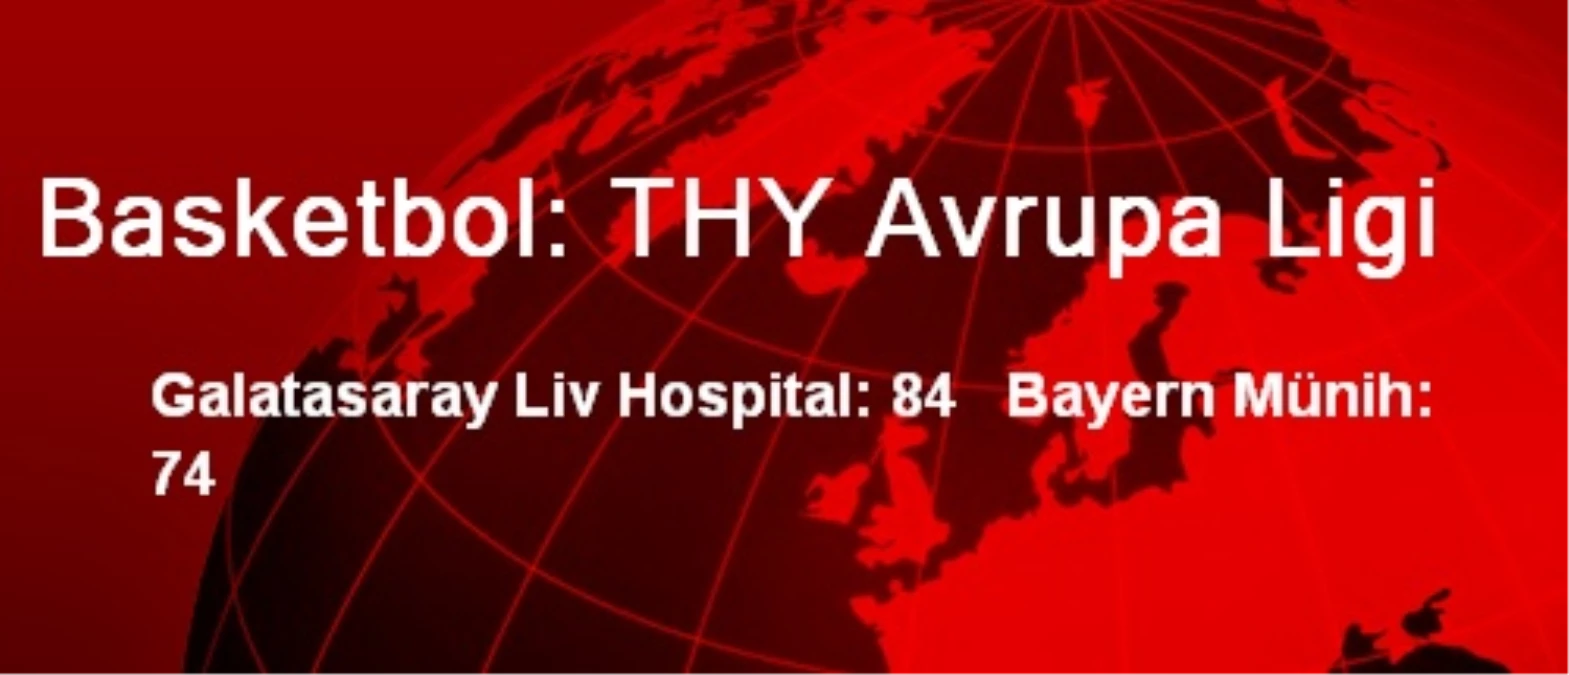 Galatasaray Liv Hospital: 84 Bayern Münih: 74